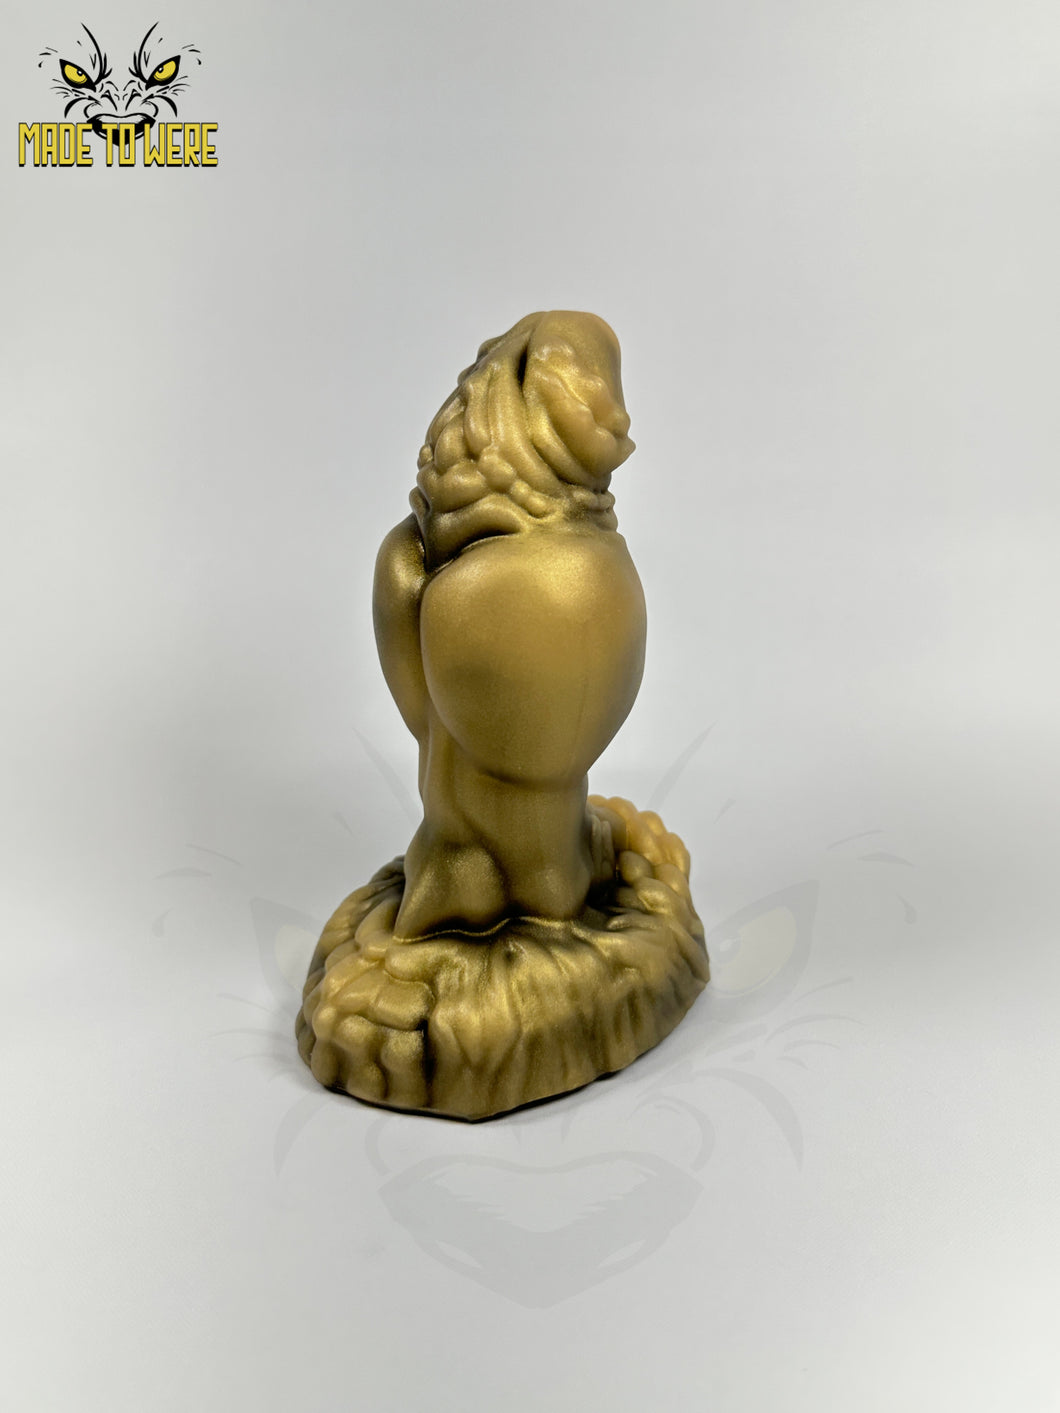 Small Valcor, Soft 00-30 Firmness, Bronze Statue